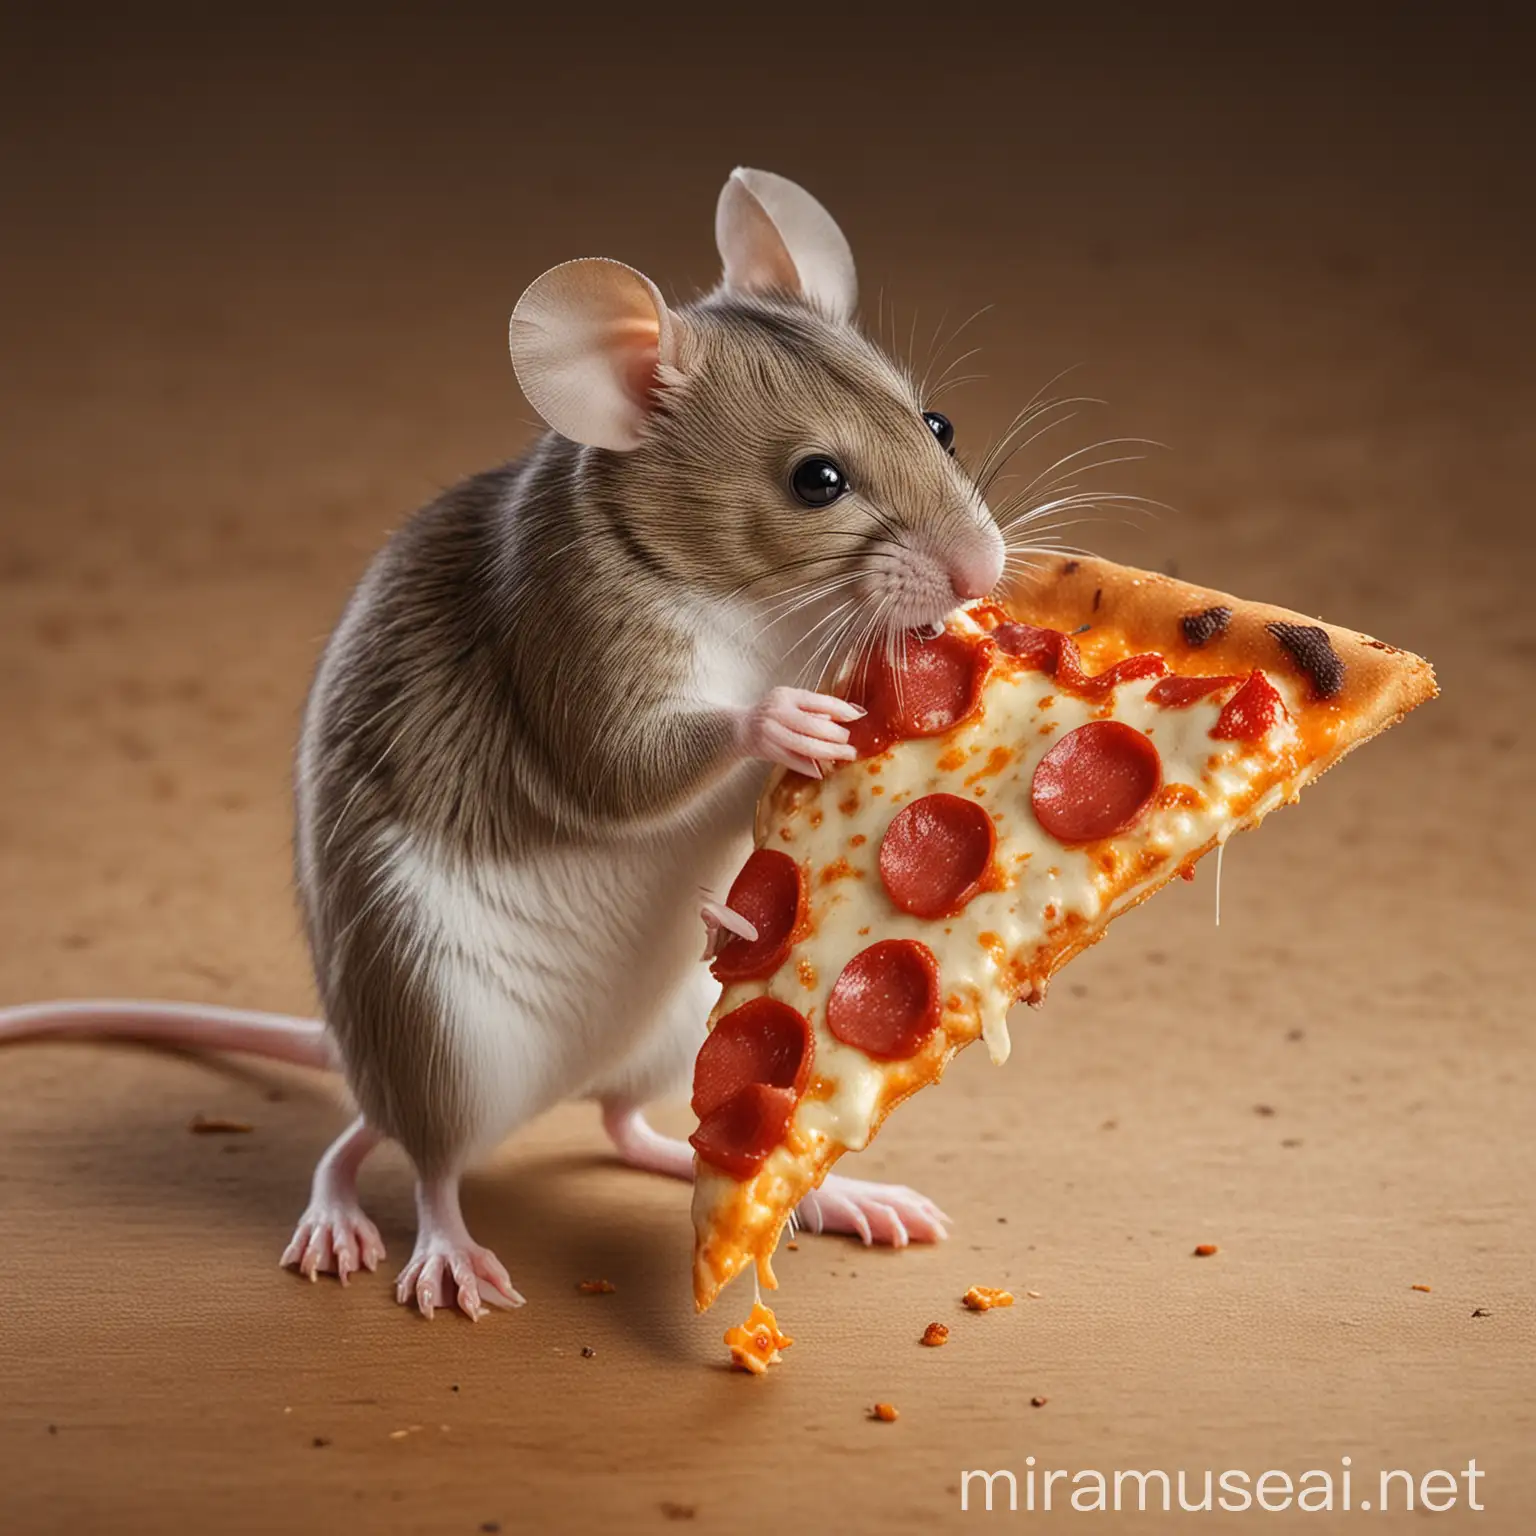 Adorable Mouse Enjoying a Delicious Pizza Slice